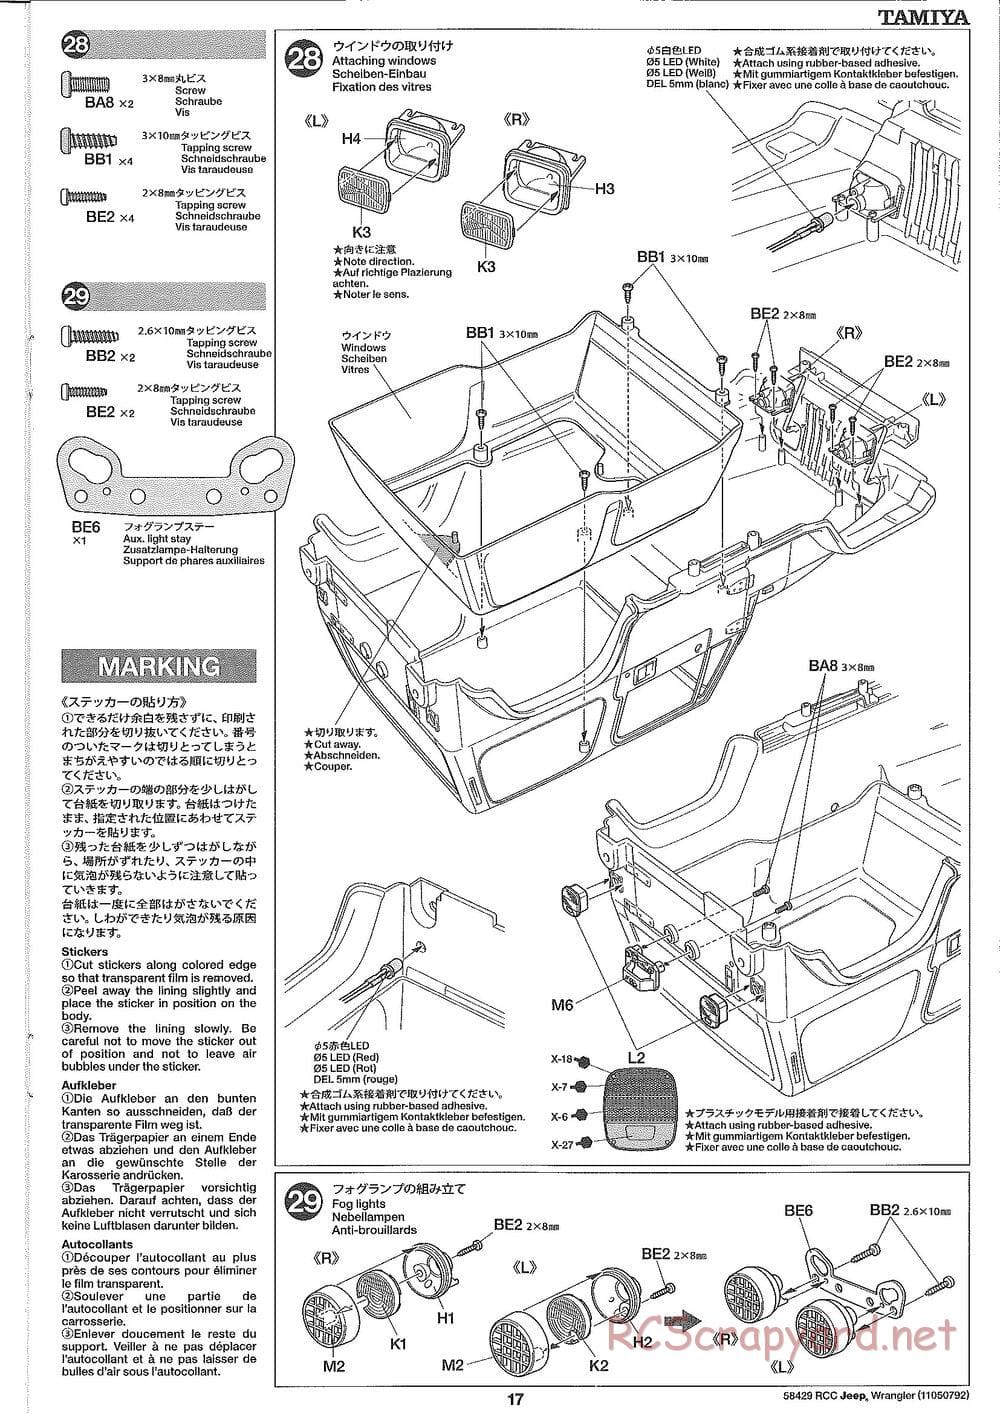 Tamiya - Jeep Wrangler - CR-01 Chassis - Manual - Page 17